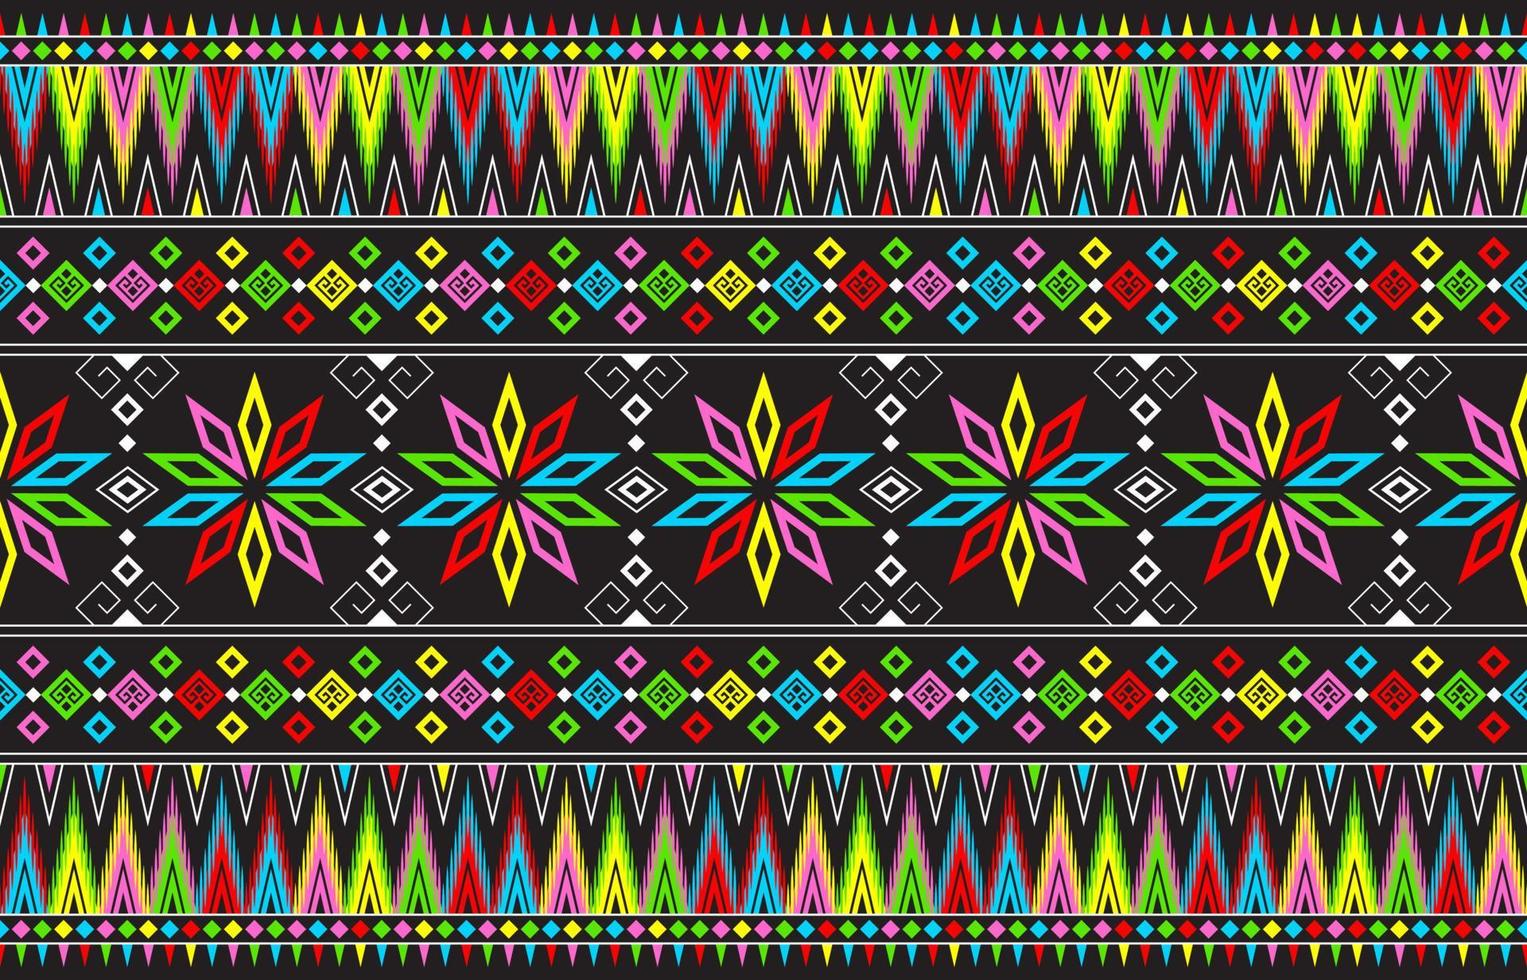 abstrakte niedliche farbe geometrische tribal ethnische ikat folklore argyle orientalisches einheimisches muster traditionelles design für hintergrund, teppich, tapete, kleidung, stoff, verpackung, druck, batik, volkstümlich, stricken, streifenvektor vektor